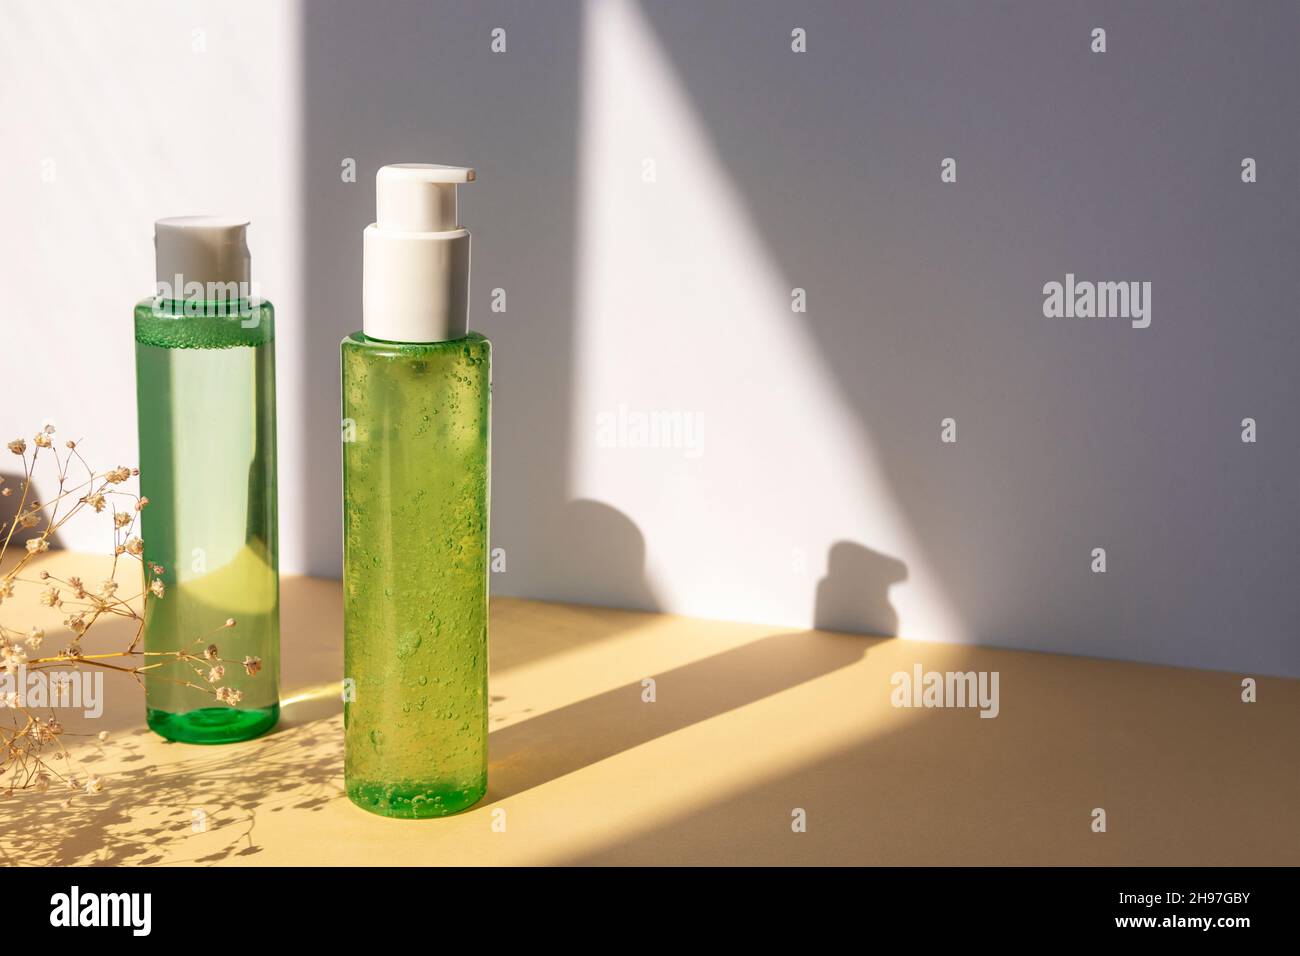 Grüne Kosmetikflaschen mit Gesichtswaschgel und Tonic auf beigem Tisch. Trockene Gypsophila Blumen Dekoration. Natürliche Bio-Kosmetik-Konzept. Modell Stockfoto